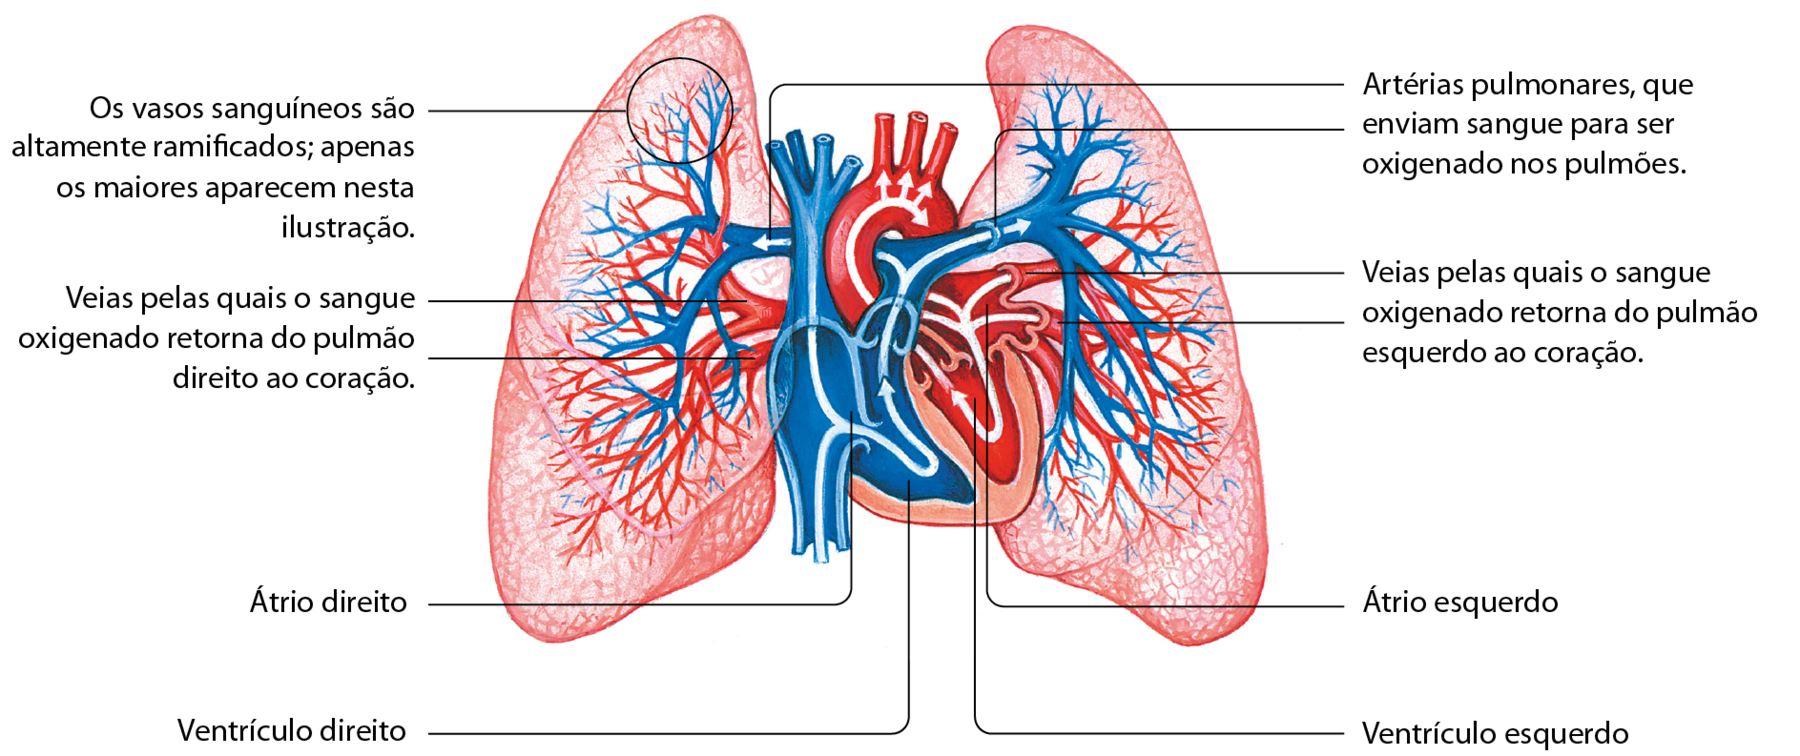 Esquema. No centro um coração e de cada um dos lados há um pulmão. No coração: átrio direito, ventrículo direito, átrio esquerdo, ventrículo esquerdo. Tubos de grande diâmetro entram no lado direito do coração trazendo sangue pobre em gás oxigênio. Do átrio direito, segue para o ventrículo direito. Dessa cavidade, o sangue vai para os pulmões: Artérias pulmonares, que enviam sangue para ser oxigenado nos pulmões. No pulmão, círculo indica região dos alvéolos: Os vasos sanguíneos são altamente ramificados; apenas os maiores aparecem nessa ilustração. 
Nos pulmões, vasos menores se juntam até formar grandes vasos que retornam ao coração: à esquerda do coração: Veias pelas quais o sangue oxigenado retorna do pulmão esquerdo ao coração. À direita do coração: Veias pelas quais o sangue oxigenado retorna do pulmão direito ao coração.